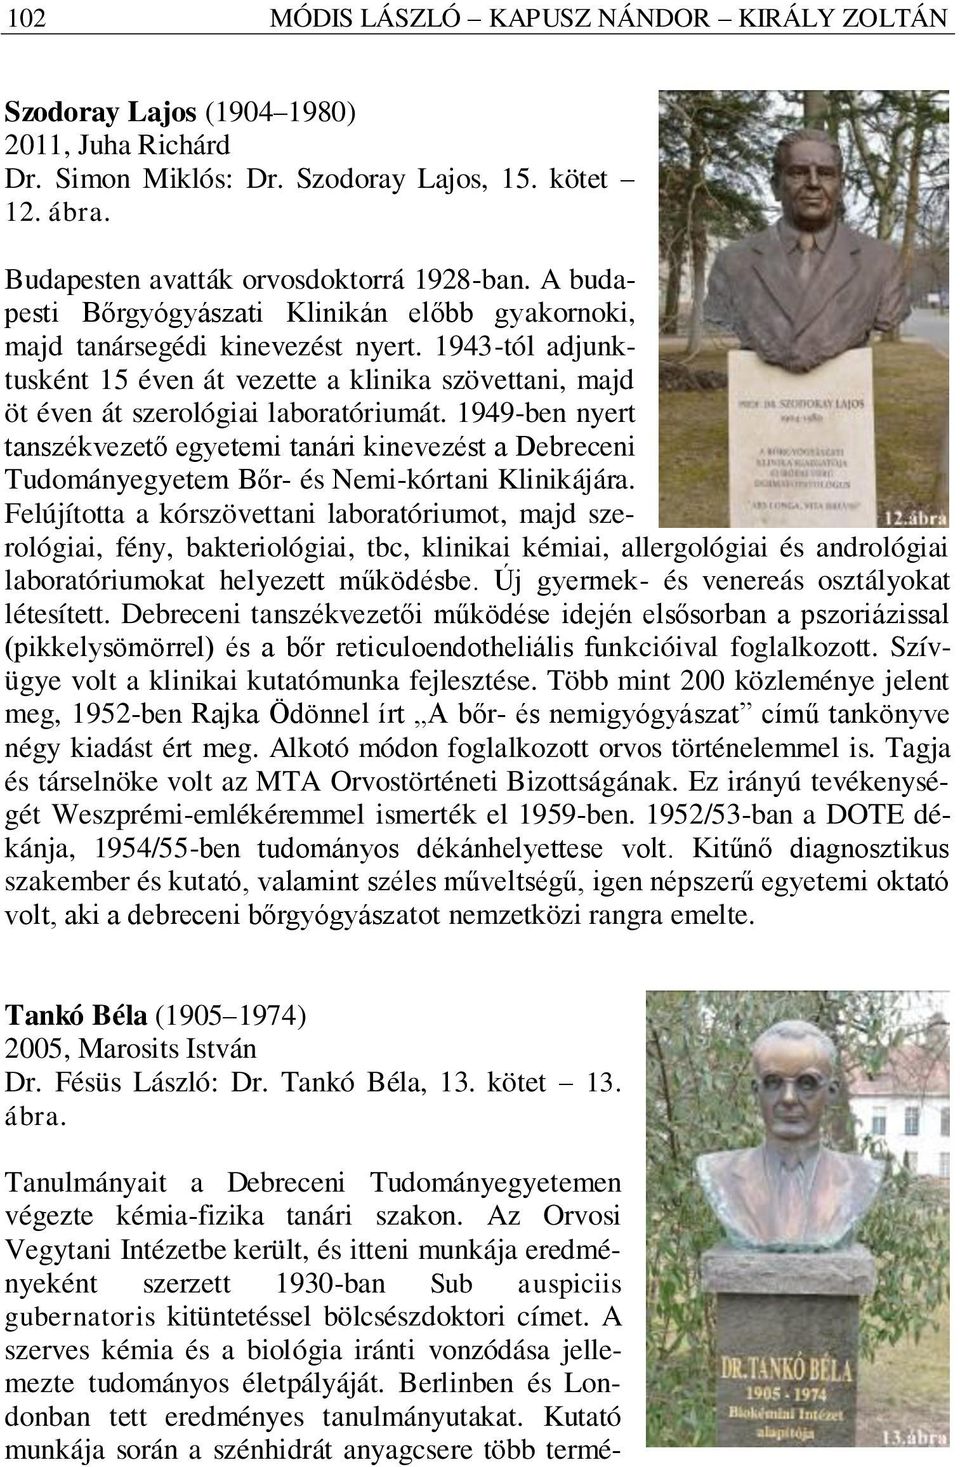 1949-ben nyert tanszékvezető egyetemi tanári kinevezést a Debreceni Tudományegyetem Bőr- és Nemi-kórtani Klinikájára.